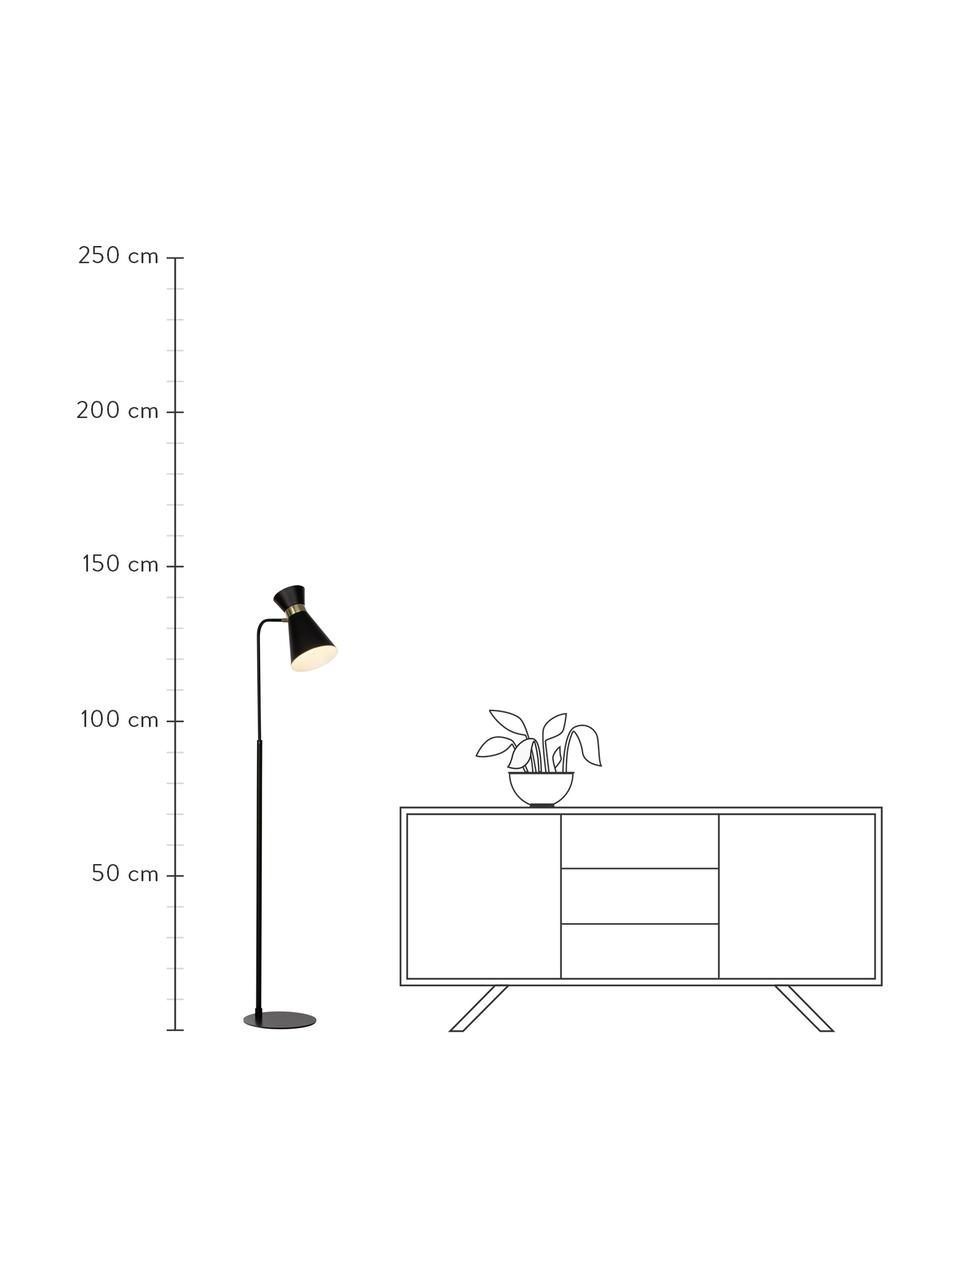 Retro leeslamp Grazia-goudkleurig, Lampenkap: gelakt metaal, Lampvoet: gelakt metaal, Decoratie: vermessingd metaal, Zwart, goudkleurig, B 39 x H 144 cm